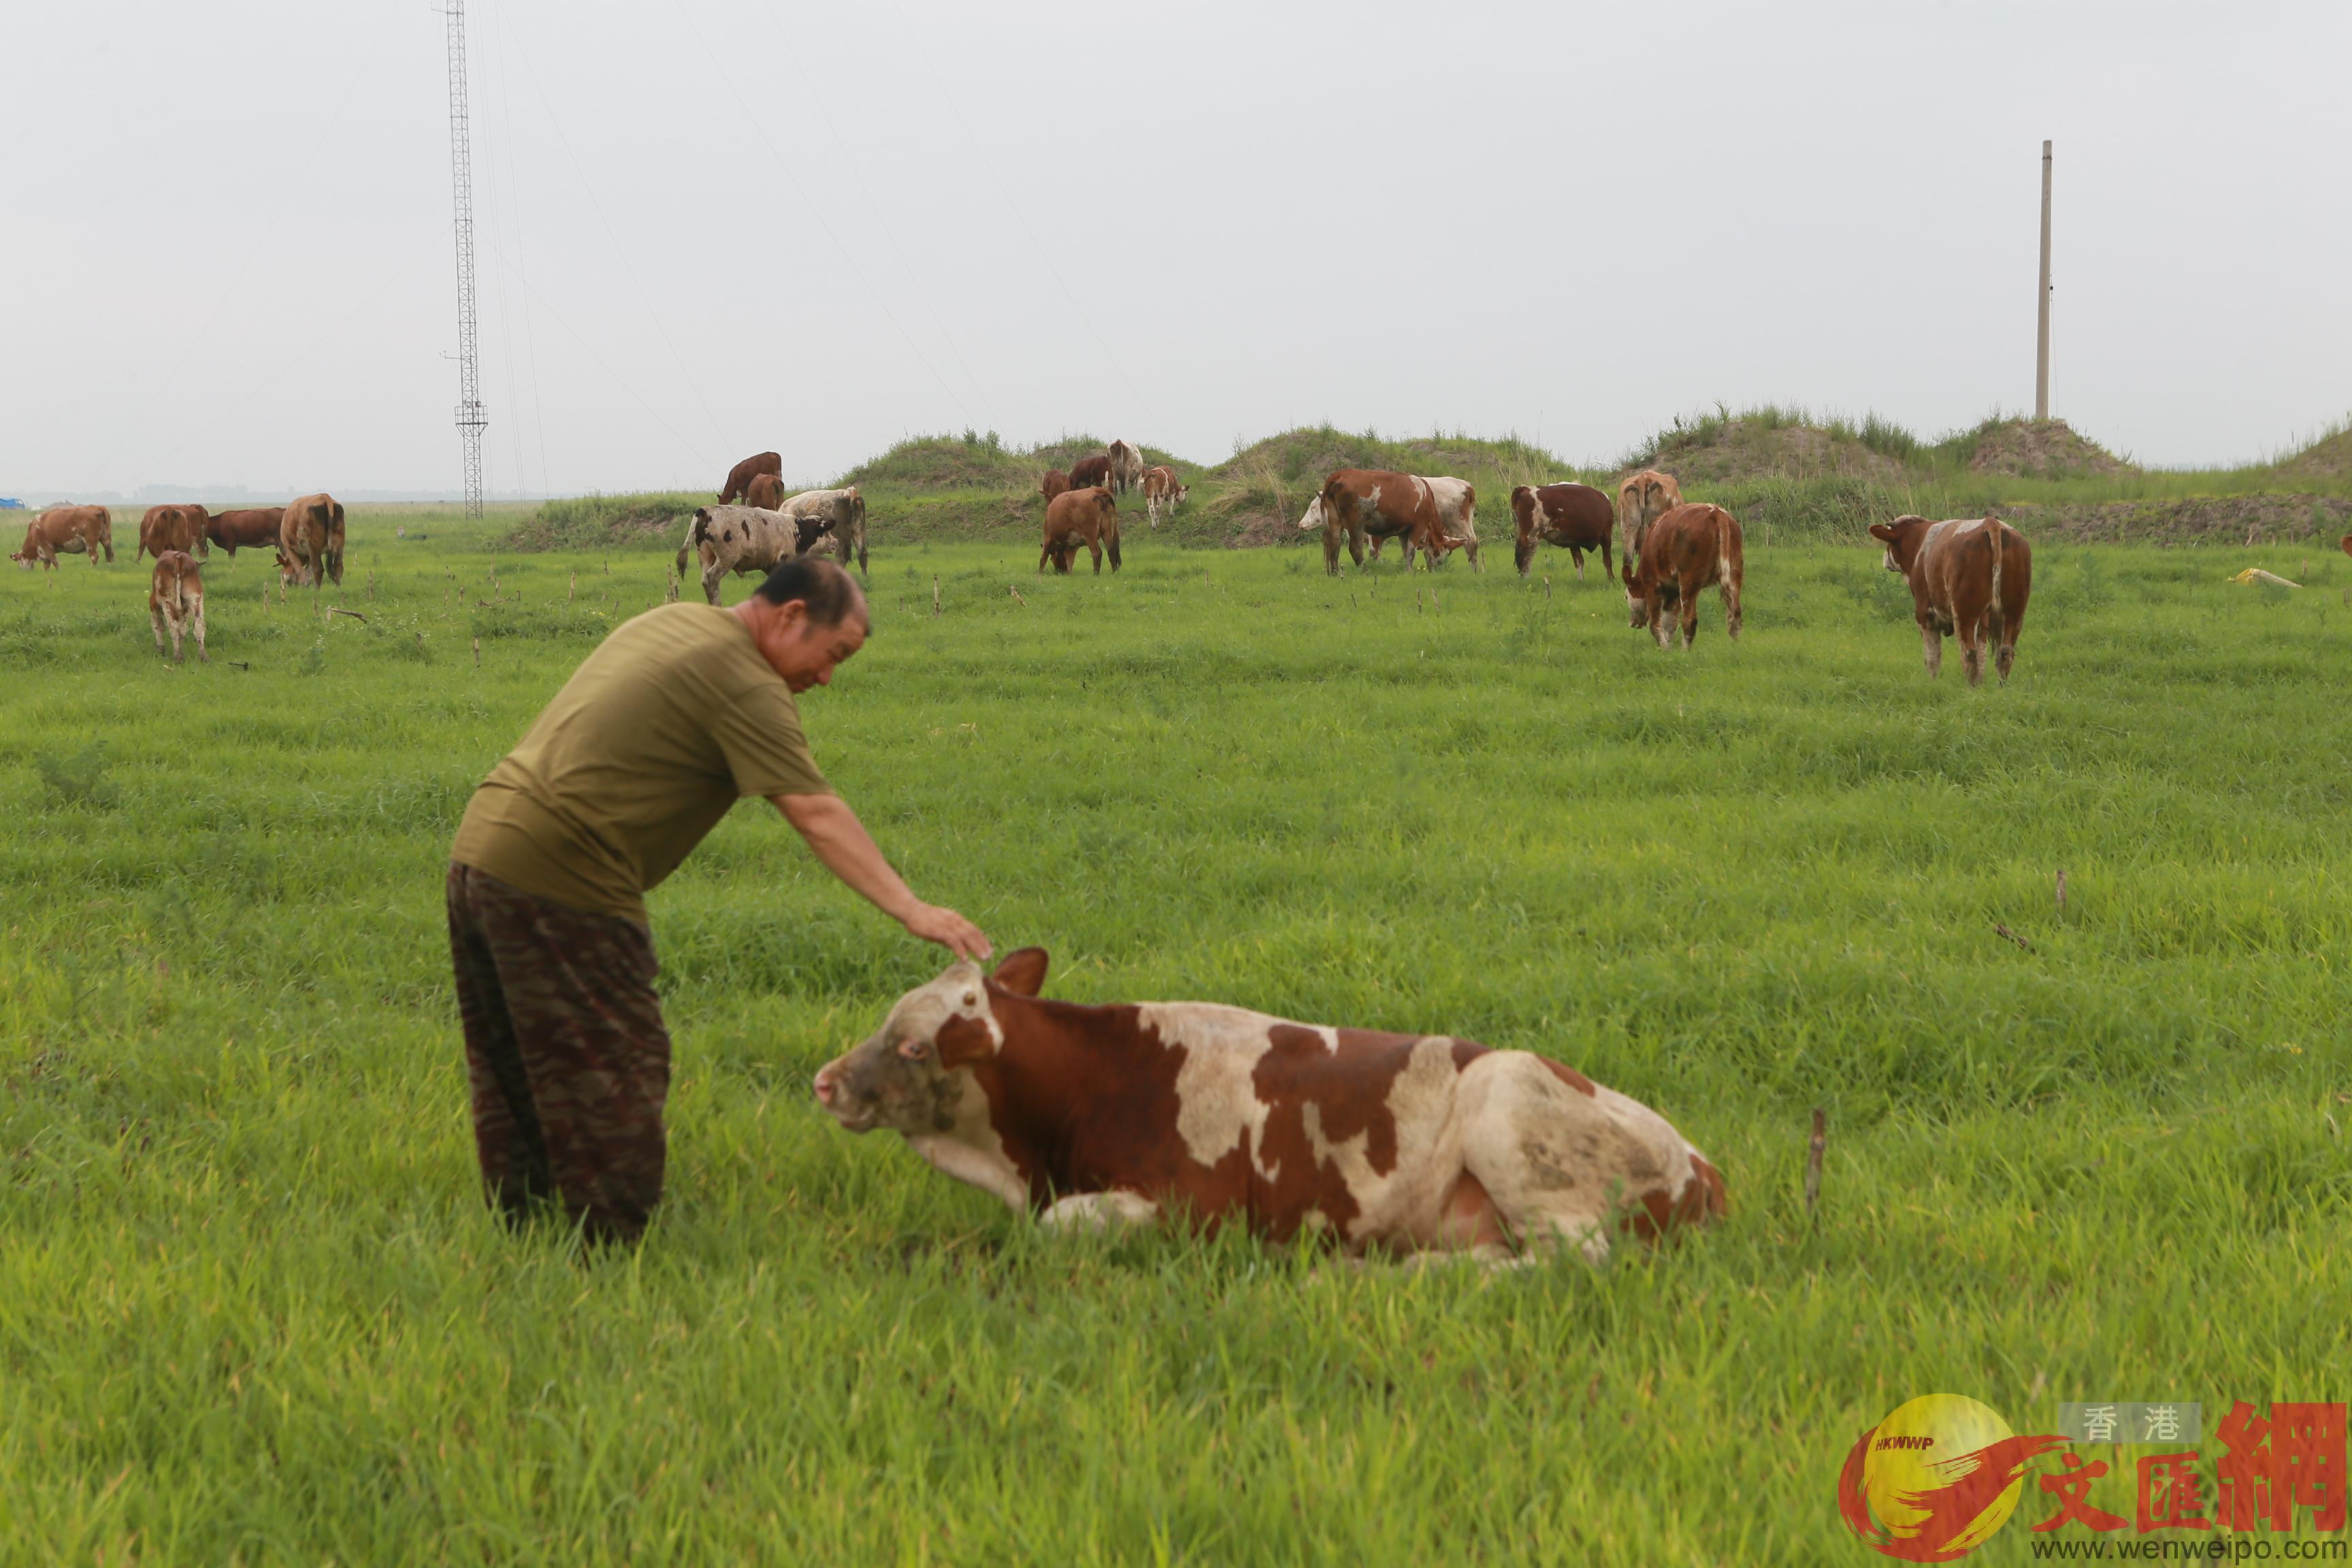  王振平通過小額免息貸款擴大了養殖規模A13頭牛是他今年的希望C]記者 盧冶 攝^